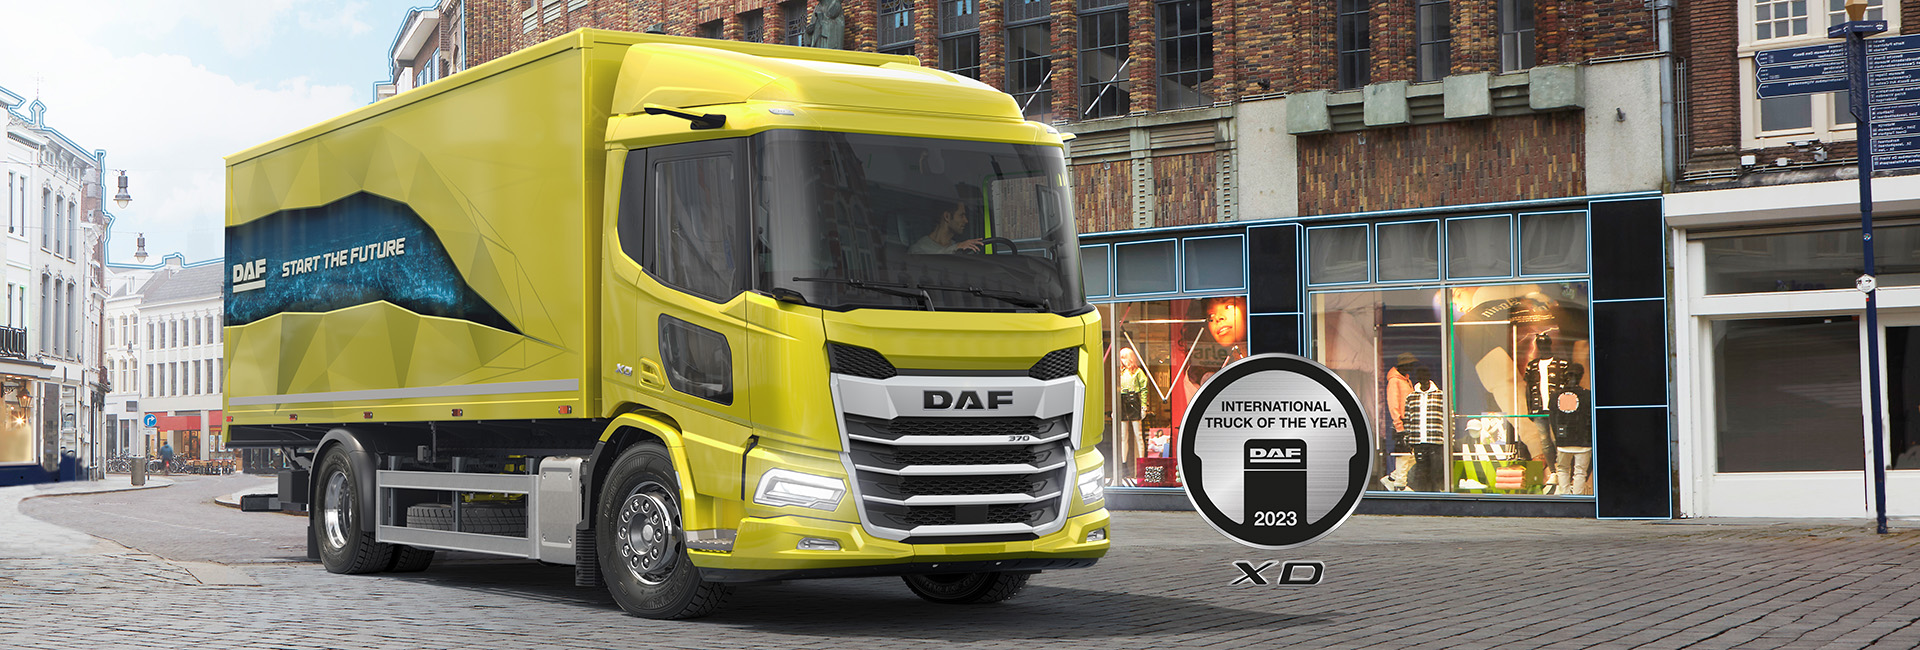 DAF XD награжден International Truck of the Year 2023!